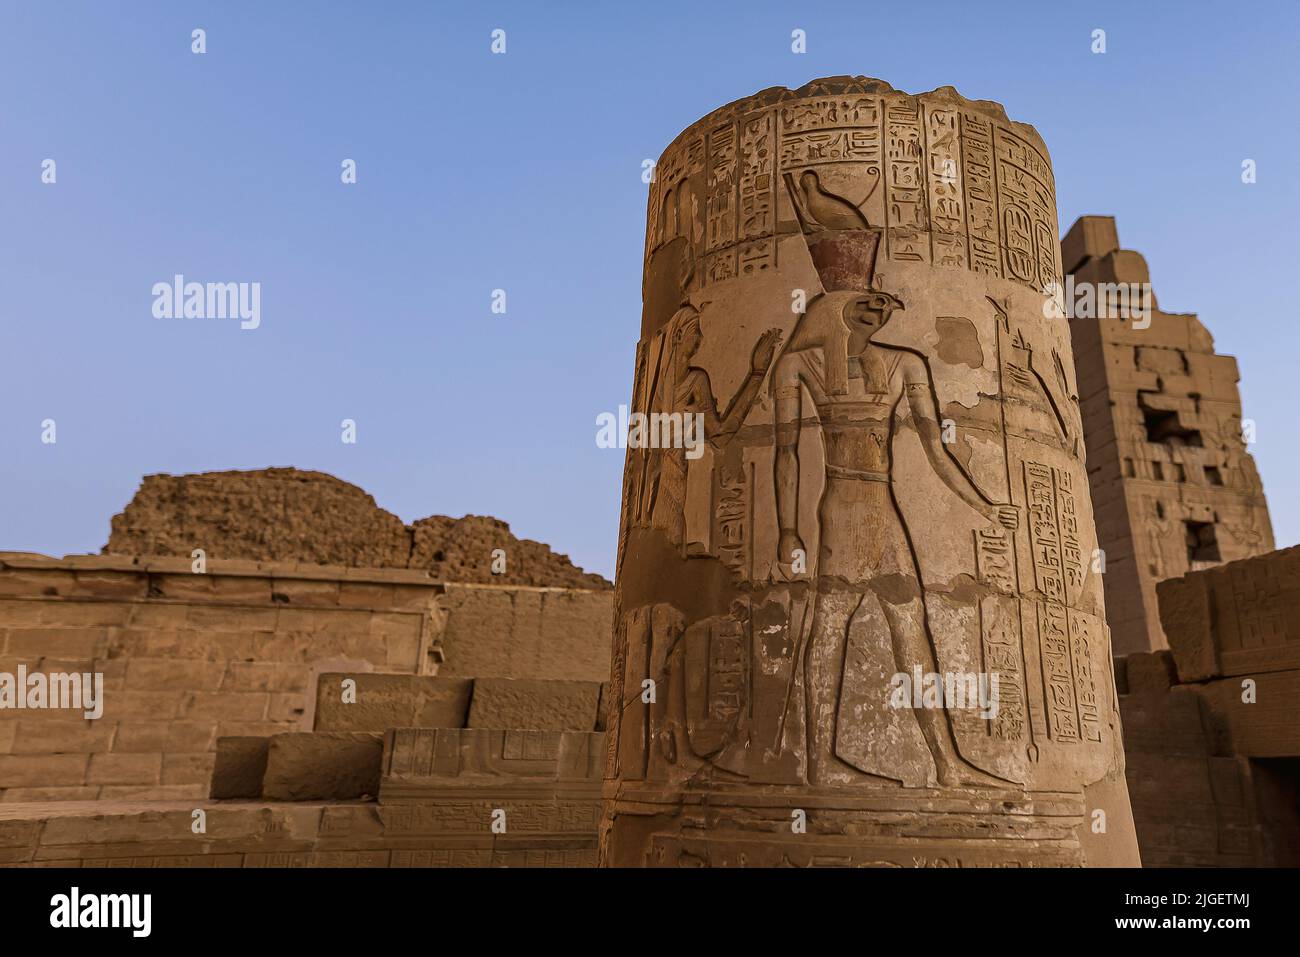 Rilievo del Dio egiziano Horus su una colonna al tempio di Kom Ombo, Egitto, Oktober 23, 2018 Foto Stock